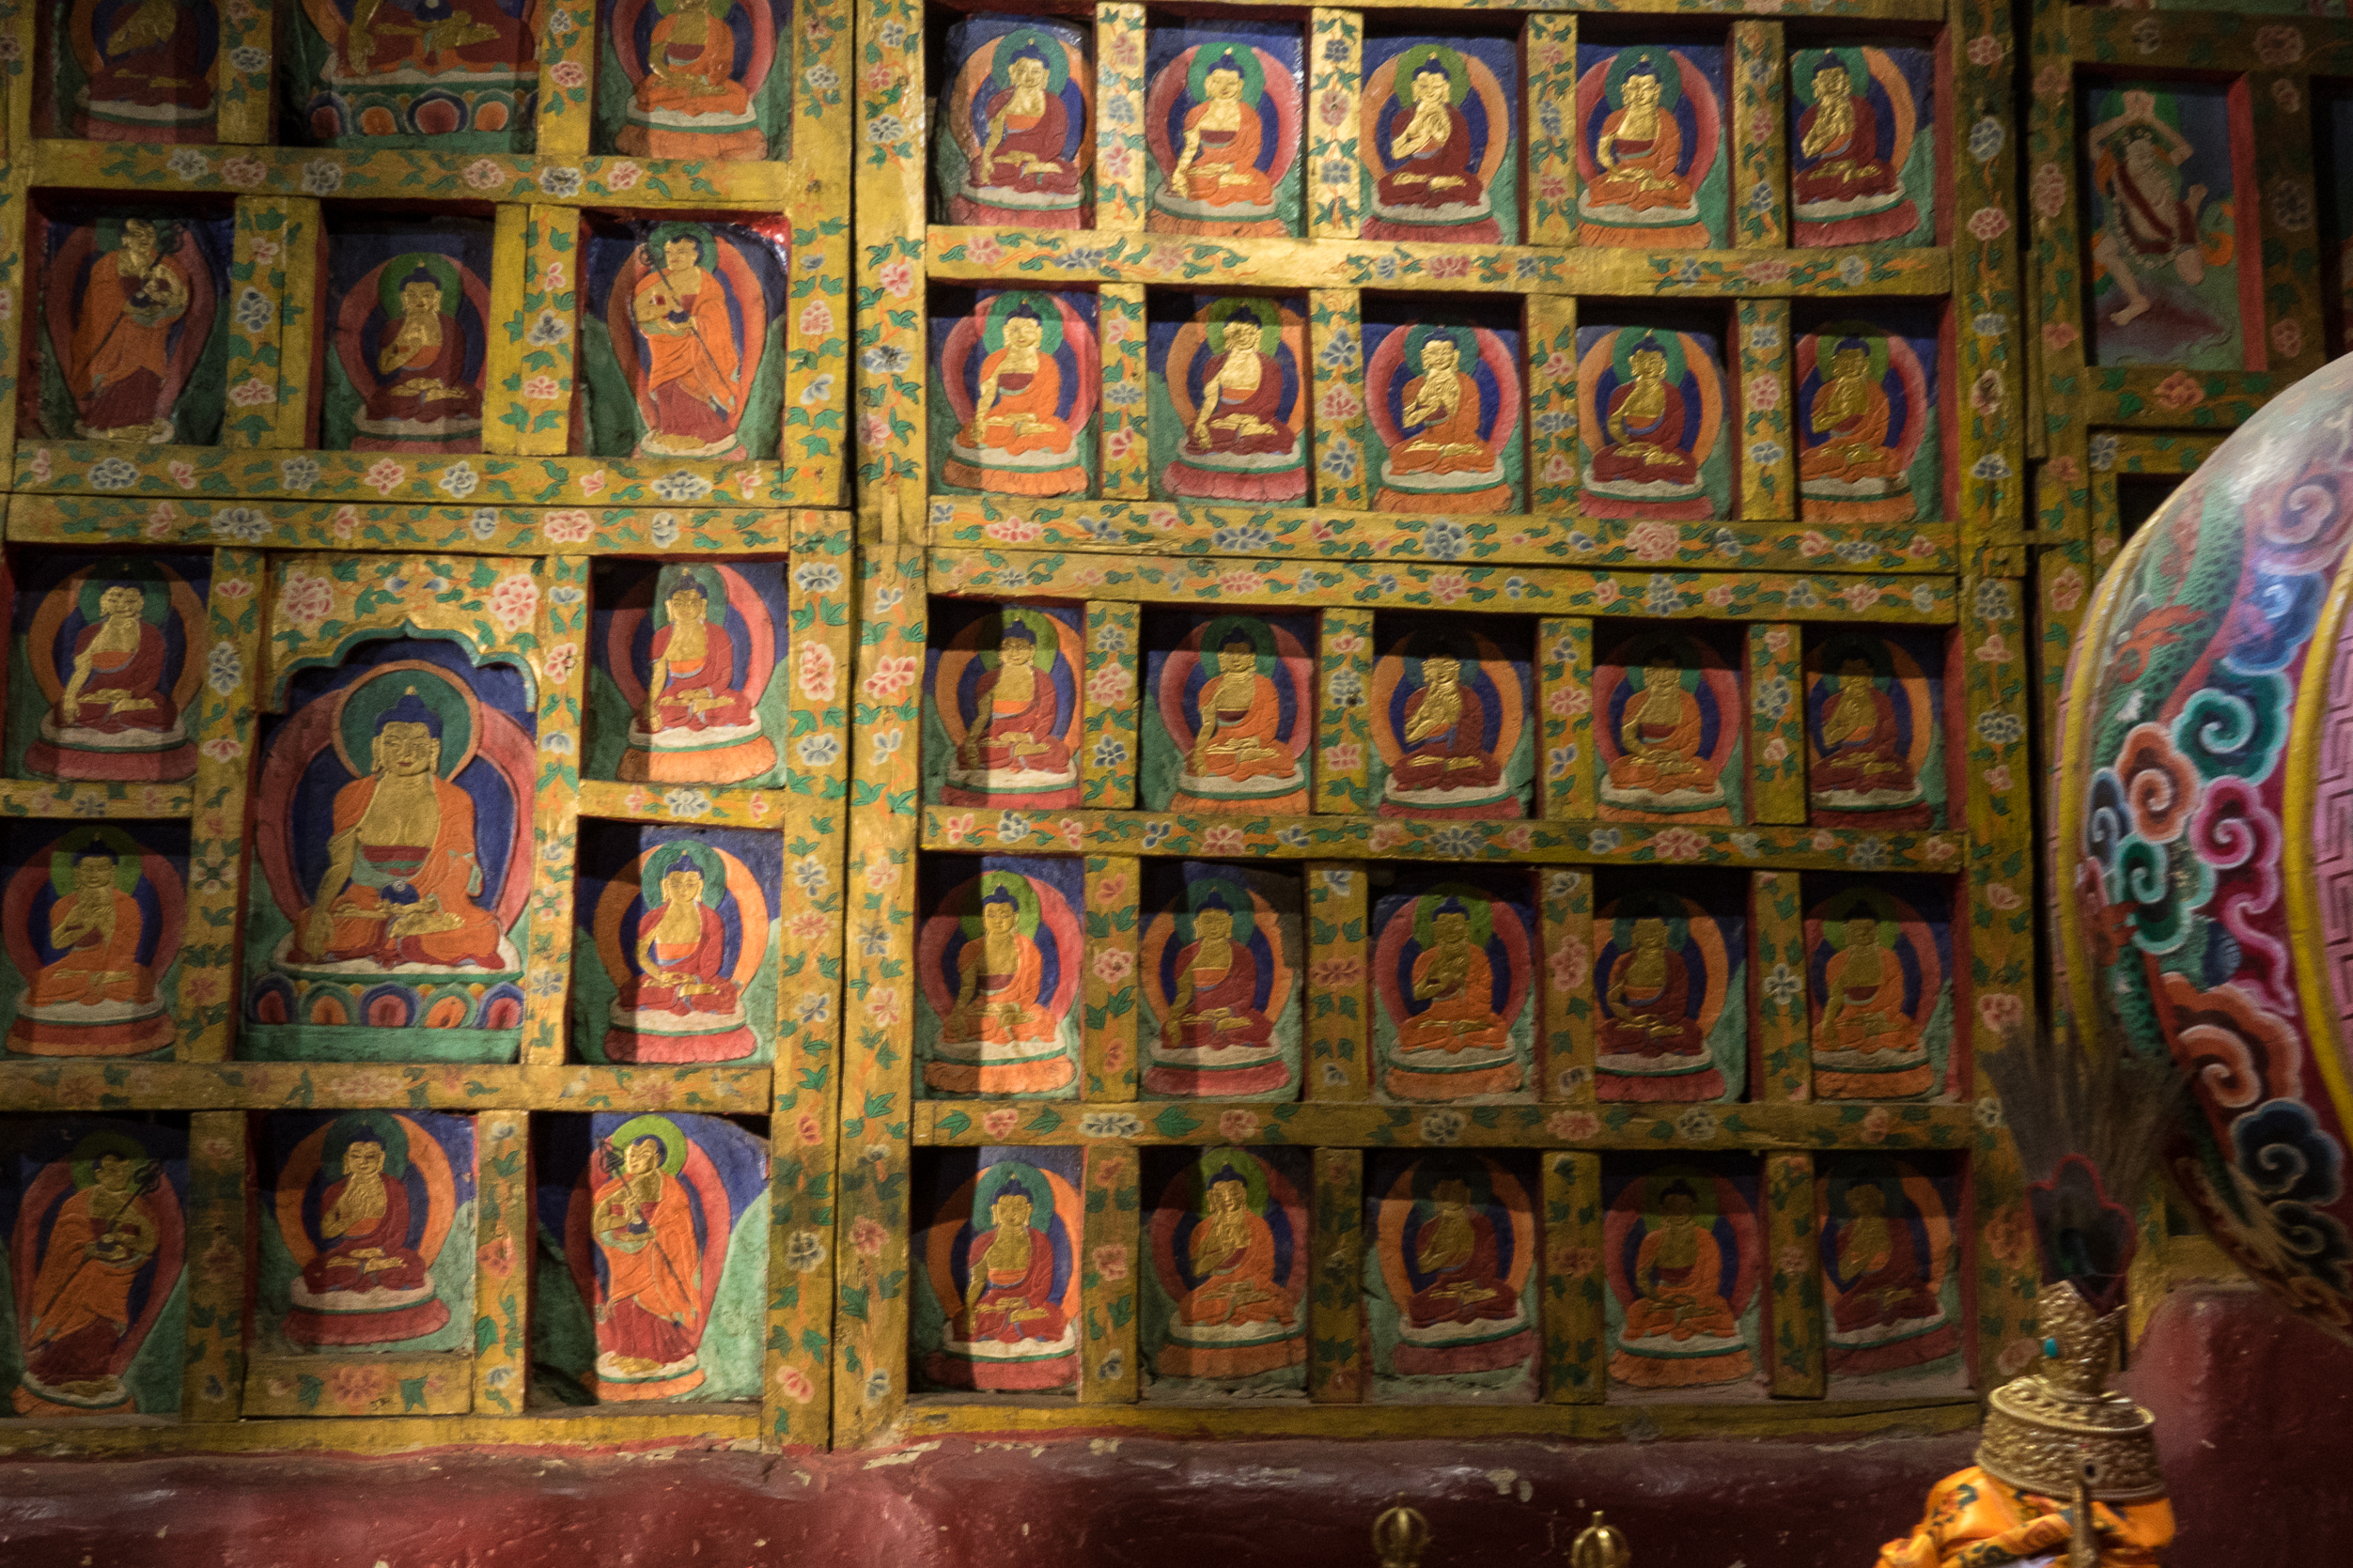 L'intérieur de Ghar Gompa : Murs tapissés de cloisons en bois et pierres peintes représentant Bouddah